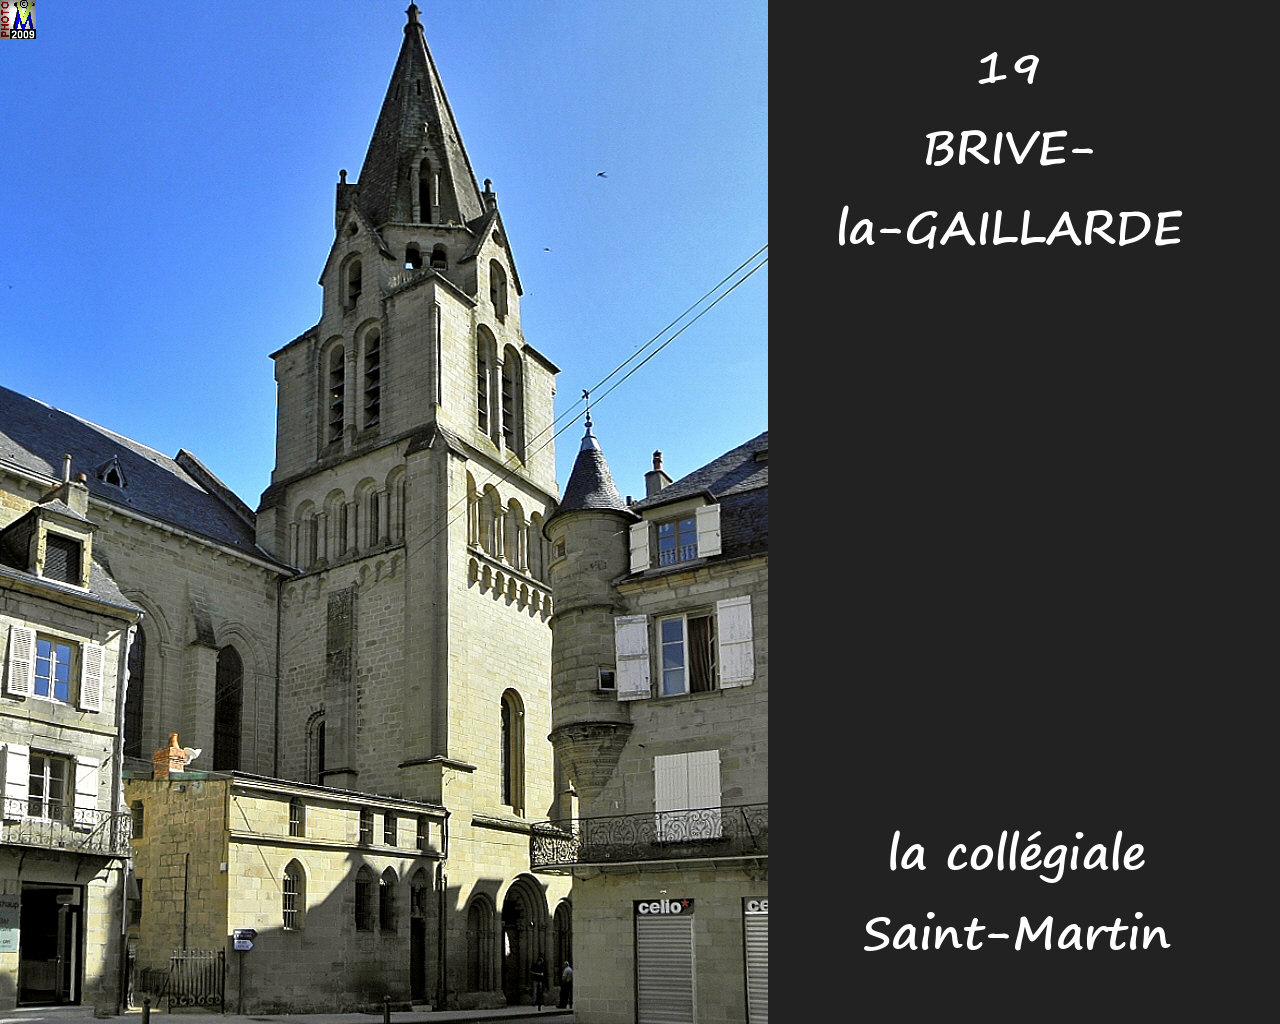 19BRIVE-GAILLARDE_collegialeSM_104.jpg